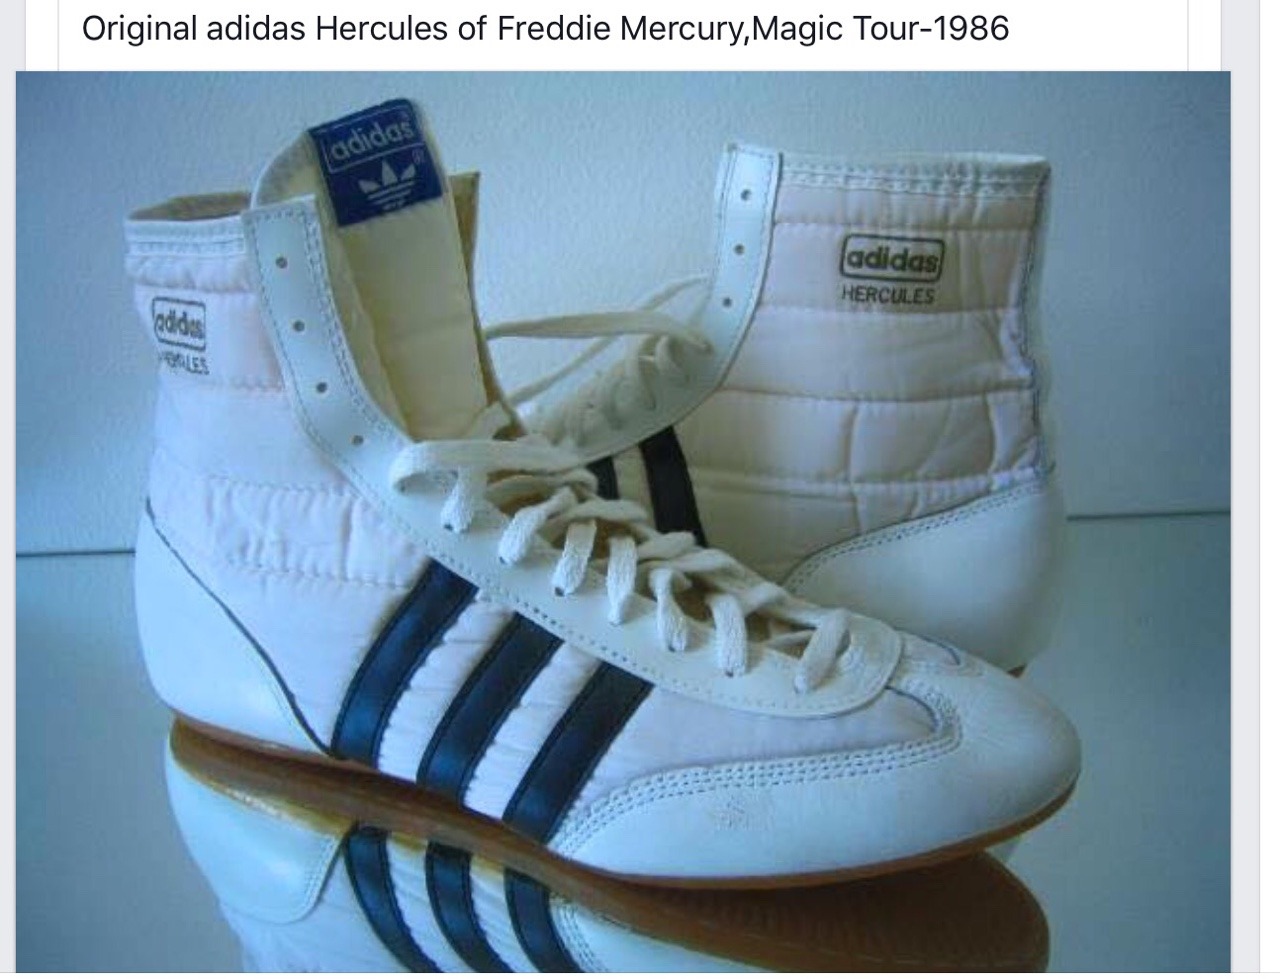 freddie mercury's adidas